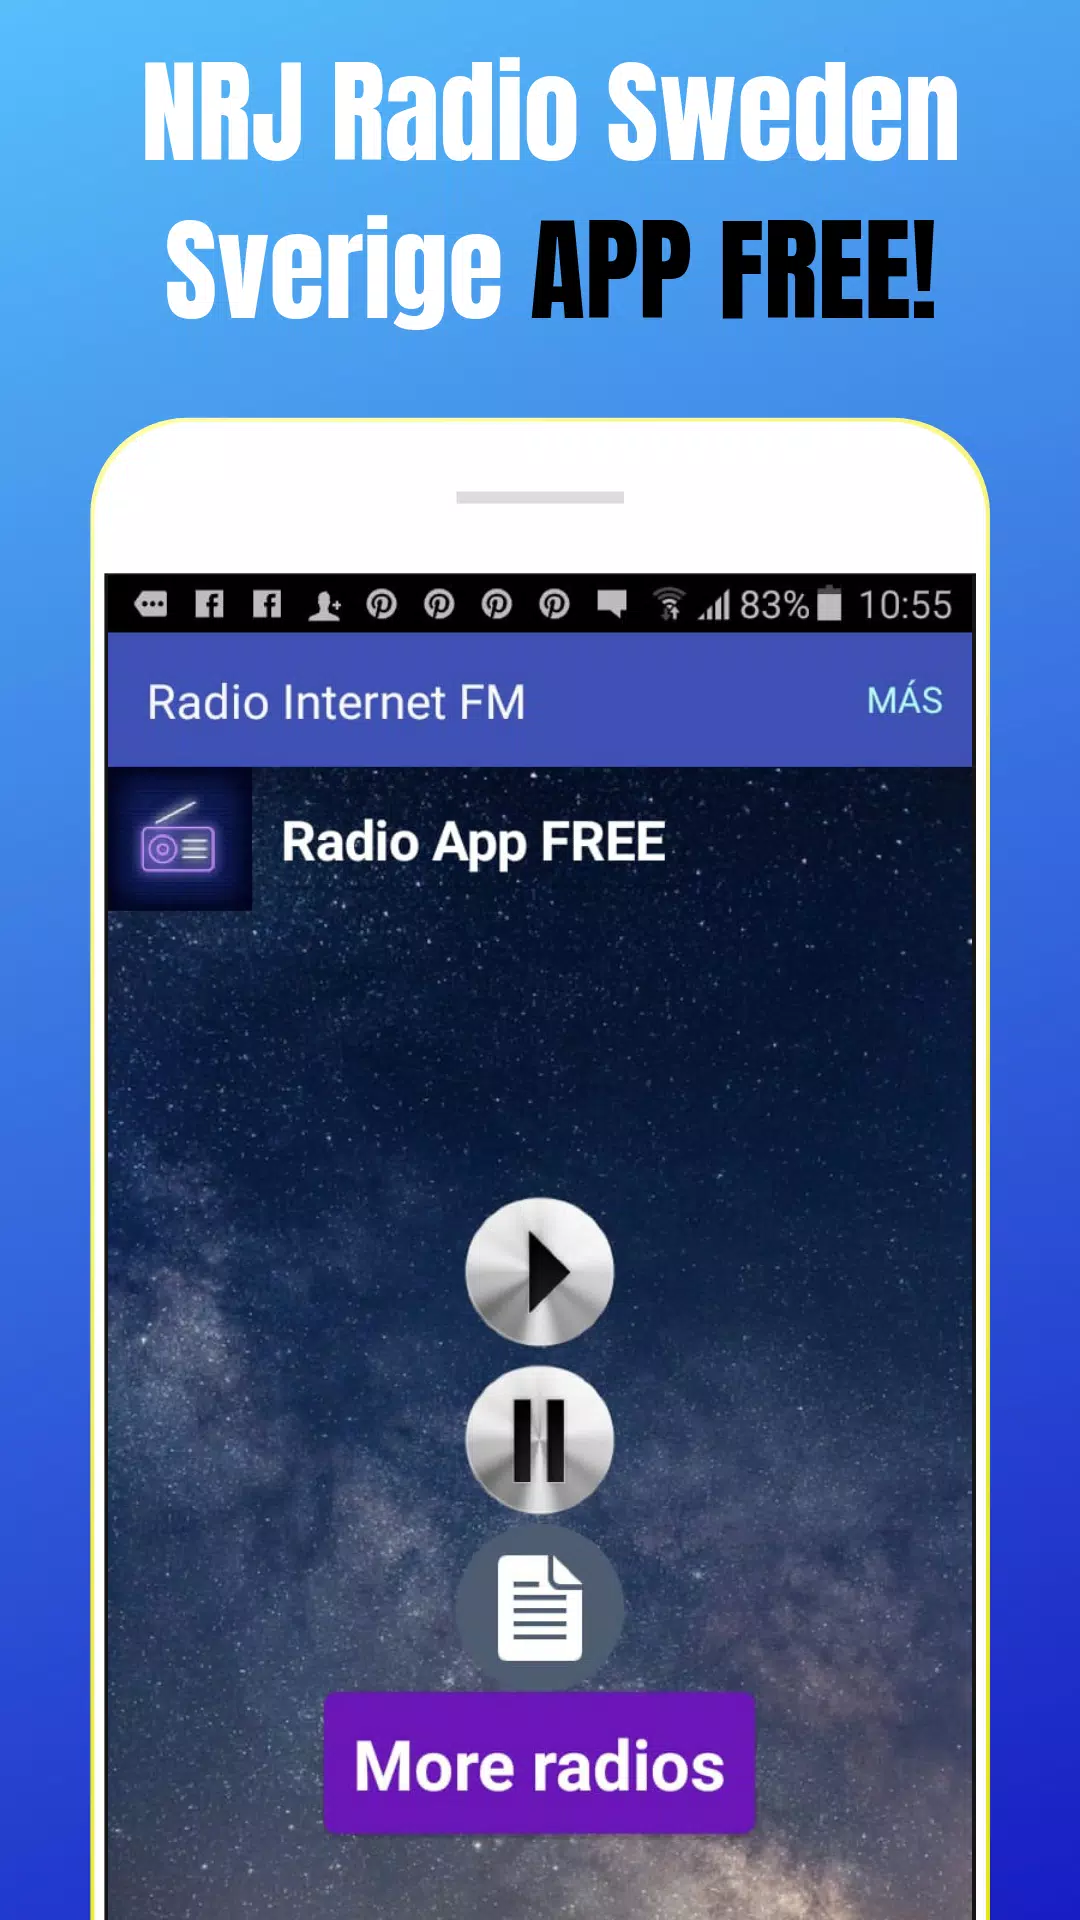 NRJ Radio Sweden Sweden App Online FM SE Free APK for Android Download